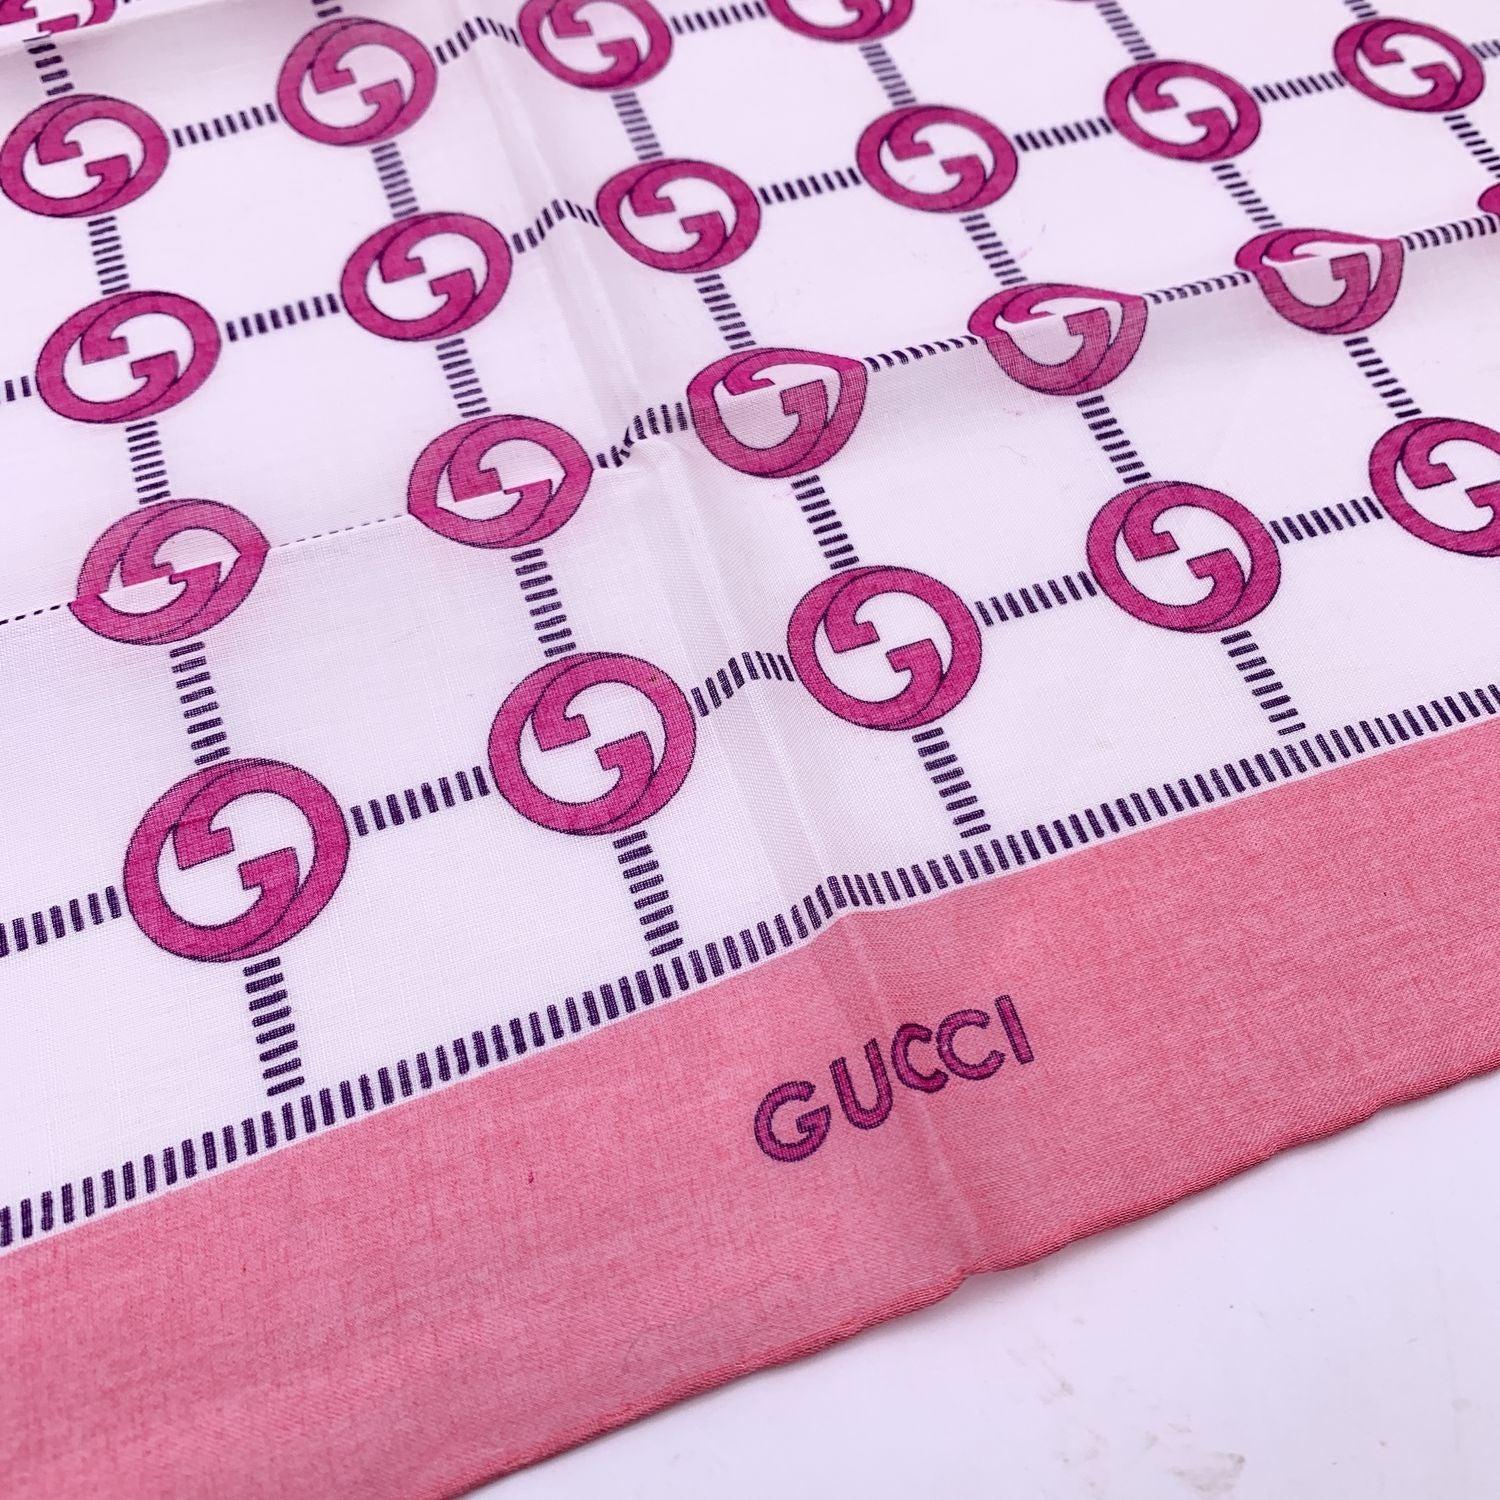 Écharpe de cou Vintage par Gucci. 100% coton. Motif rose du logo GG avec bordures roses. Signature 'Gucci' imprimée sur la bordure centrale inférieure. Approx. Dimensions : 16.5 x 16.5 inches - 42 x 42 cm Détails MATERIAL : Coton COULEUR : Rose